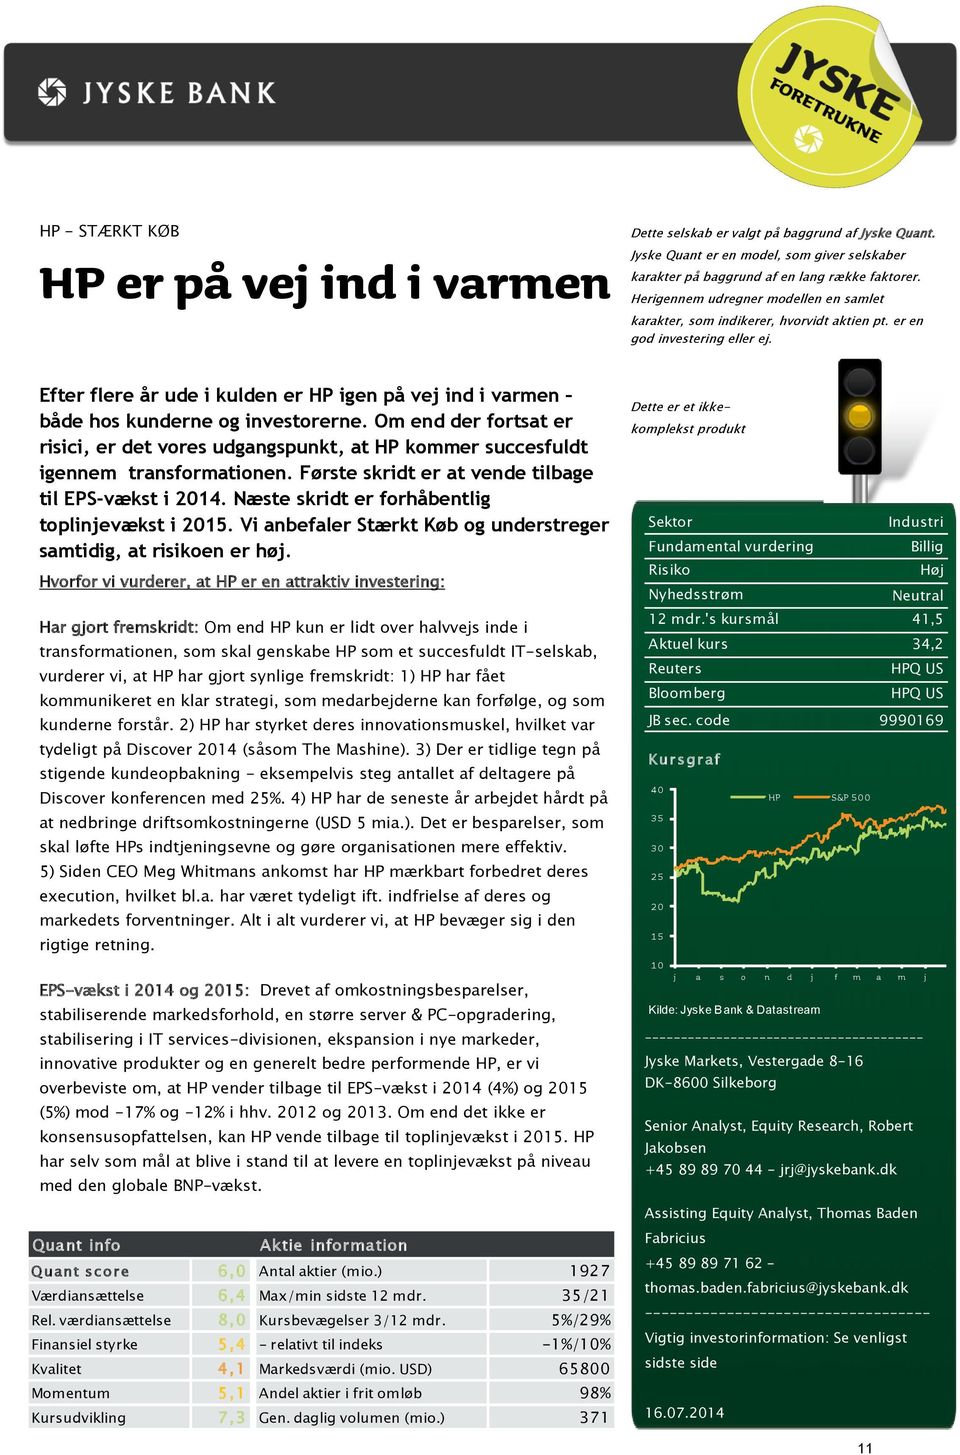 Efter flere år ude i kulden er HP igen på vej ind i varmen både hos kunderne og investorerne.